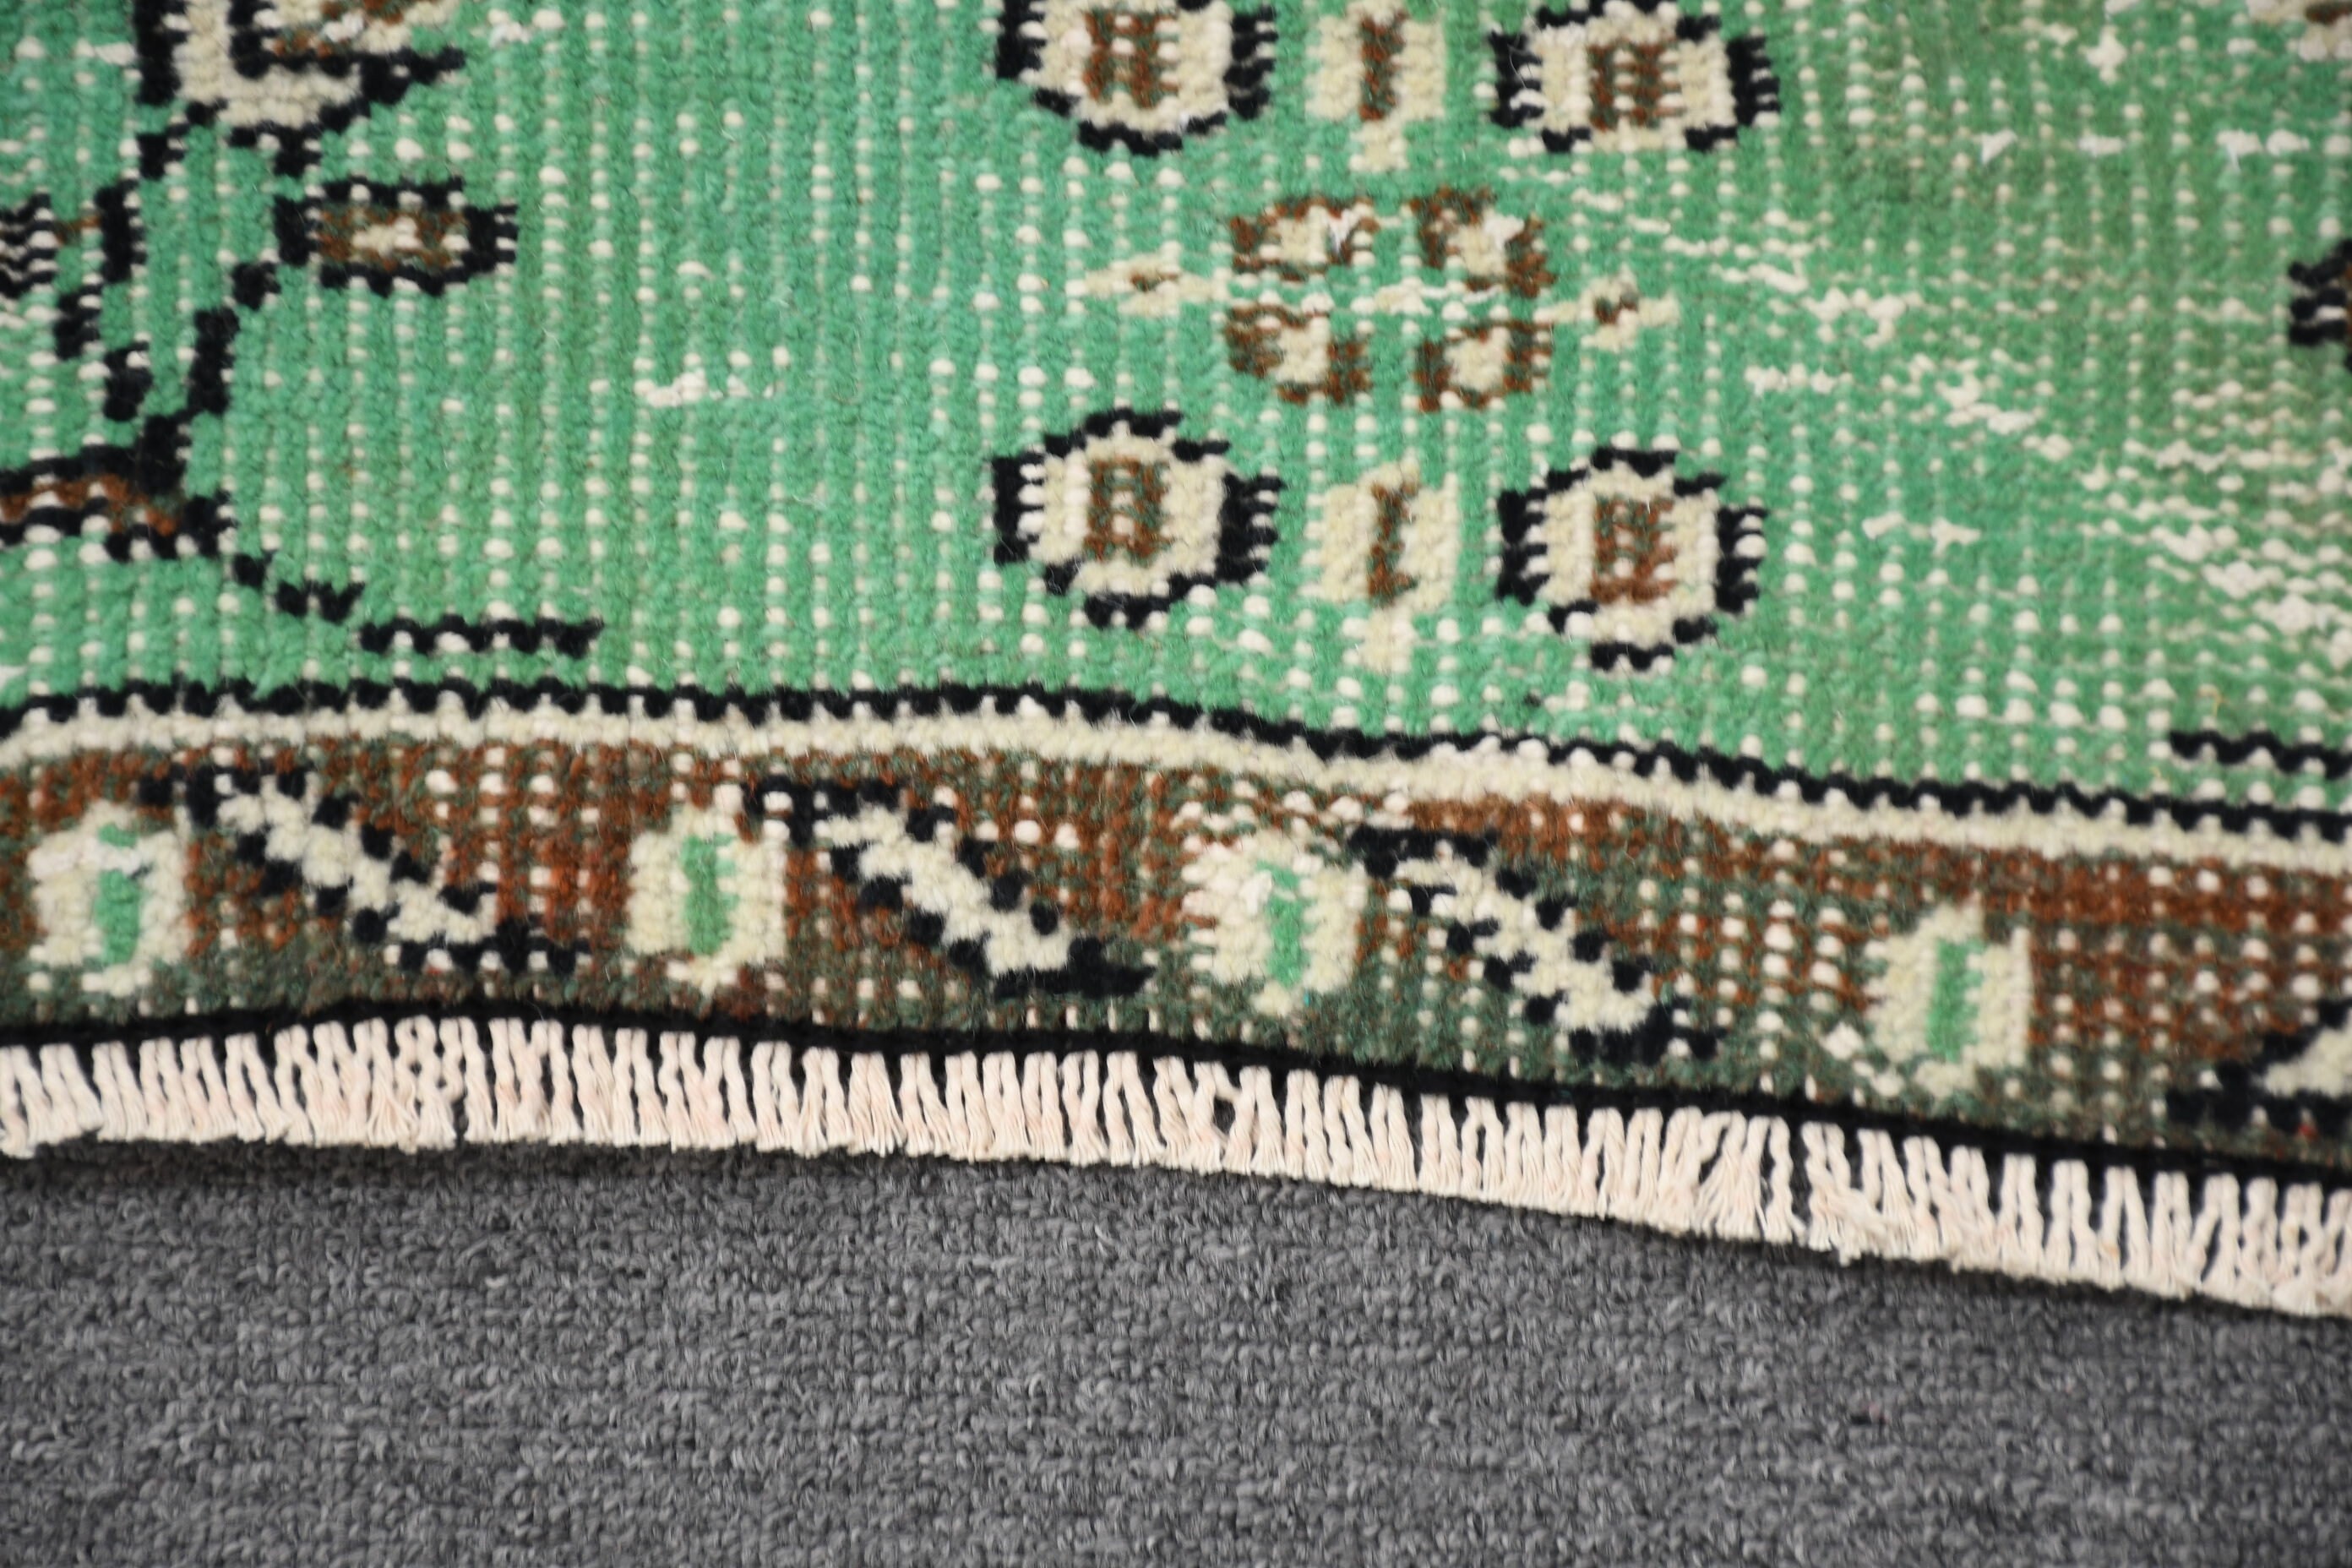 Wool Rug, Turkish Rugs, Living Room Rug, Dining Room Rug, Beige Home Decor Rug, Oushak Rug, Vintage Rug, 4.9x9.2 ft Large Rug, Ethnic Rug